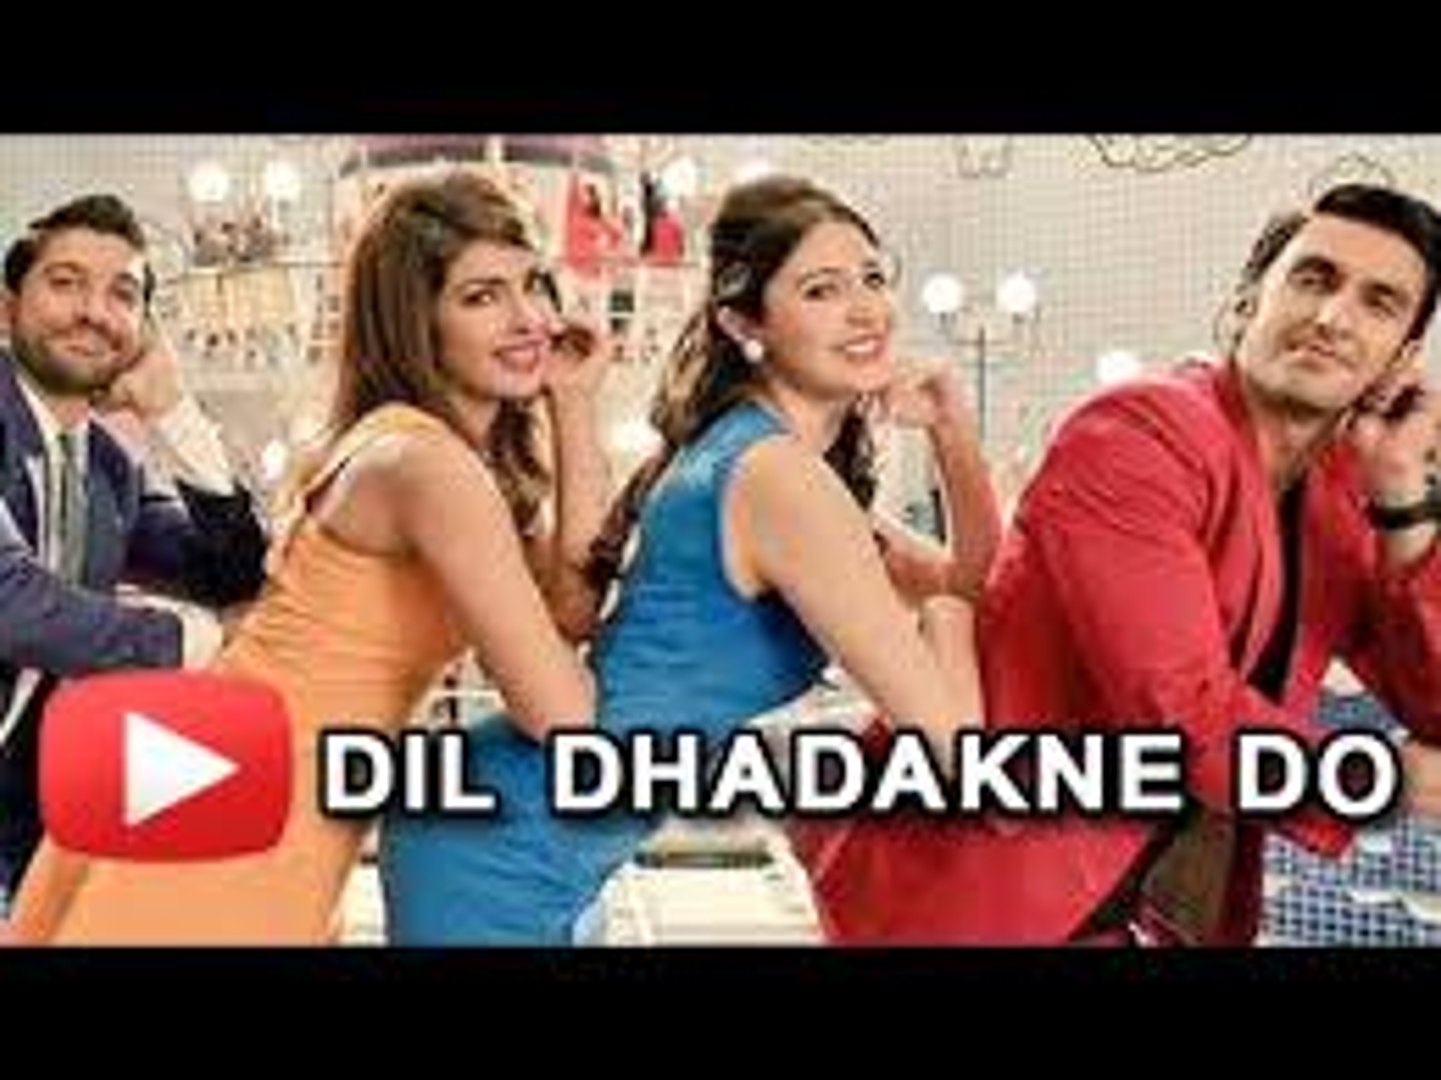 Dil Dhadakne Do - Title Song (Video) - Singers- Priyanka Chopra, Farhan Akhtar - MUSIC CHOICE(MC)